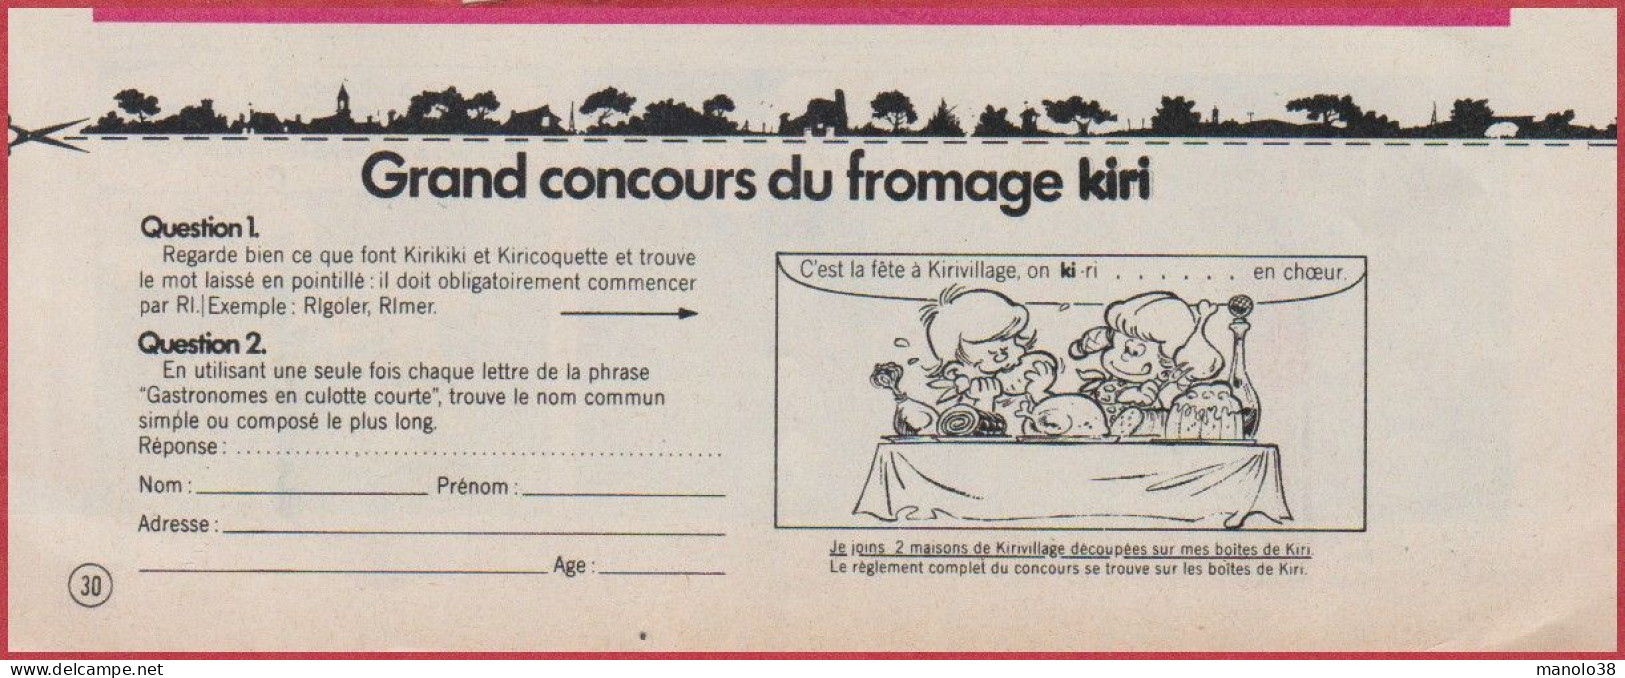 Kiri Présente Les Exploits De Kirikiki Et Kiricoquette. BD. Bande Dessinée De Roba. Concours. Fromage. 1975. - Werbung